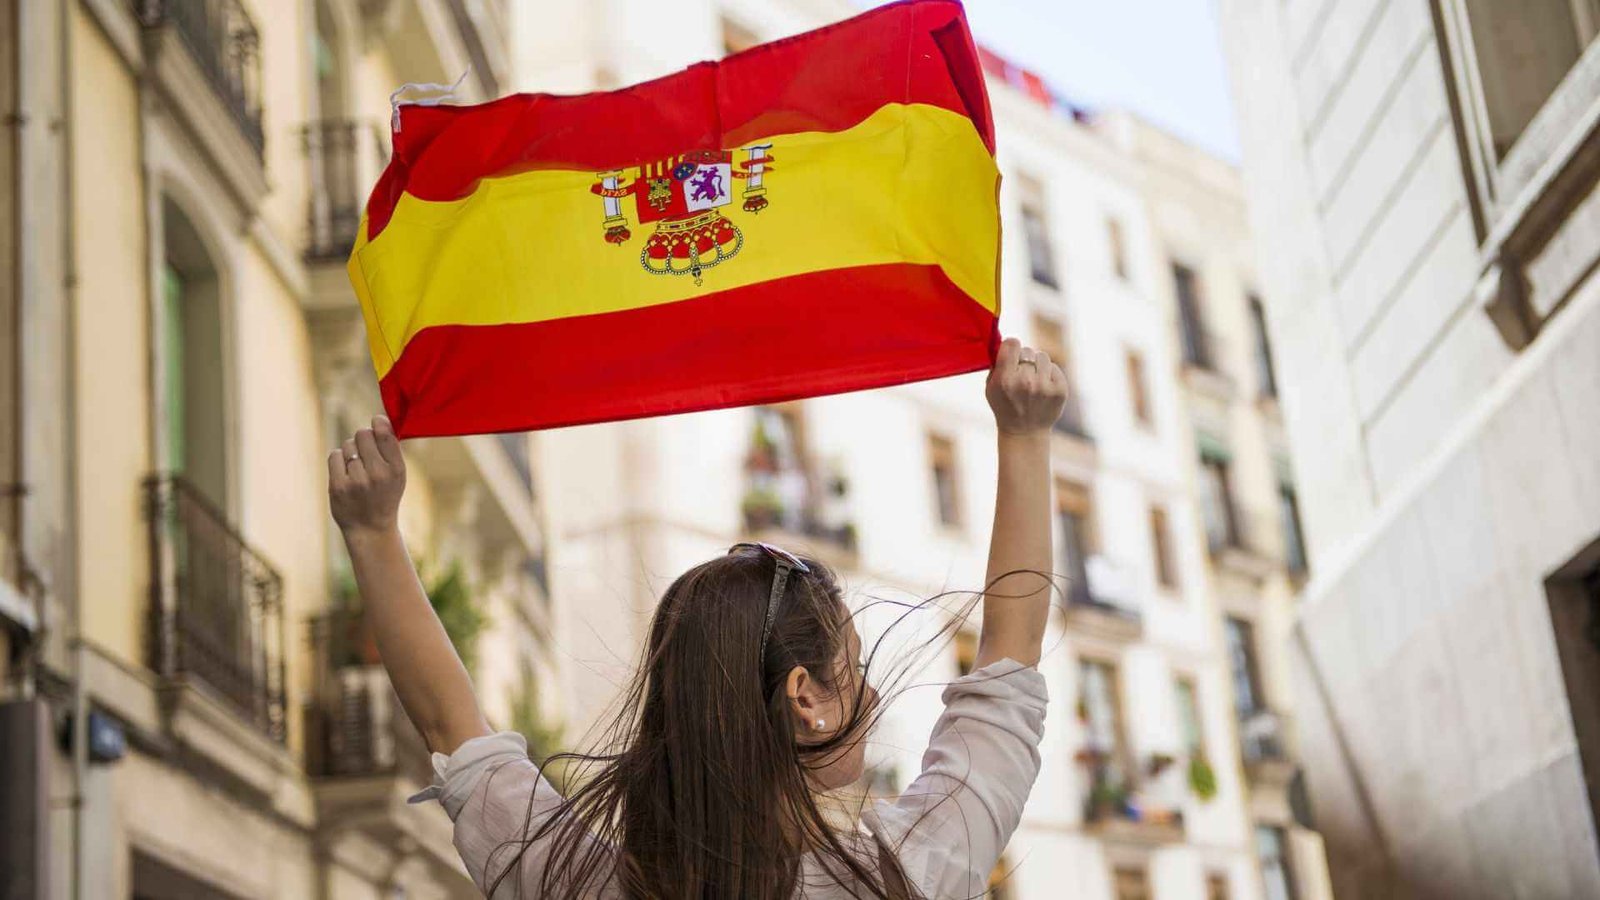 Featured image for “¿Vivir en España? Los lugares con mejor calidad de vida”